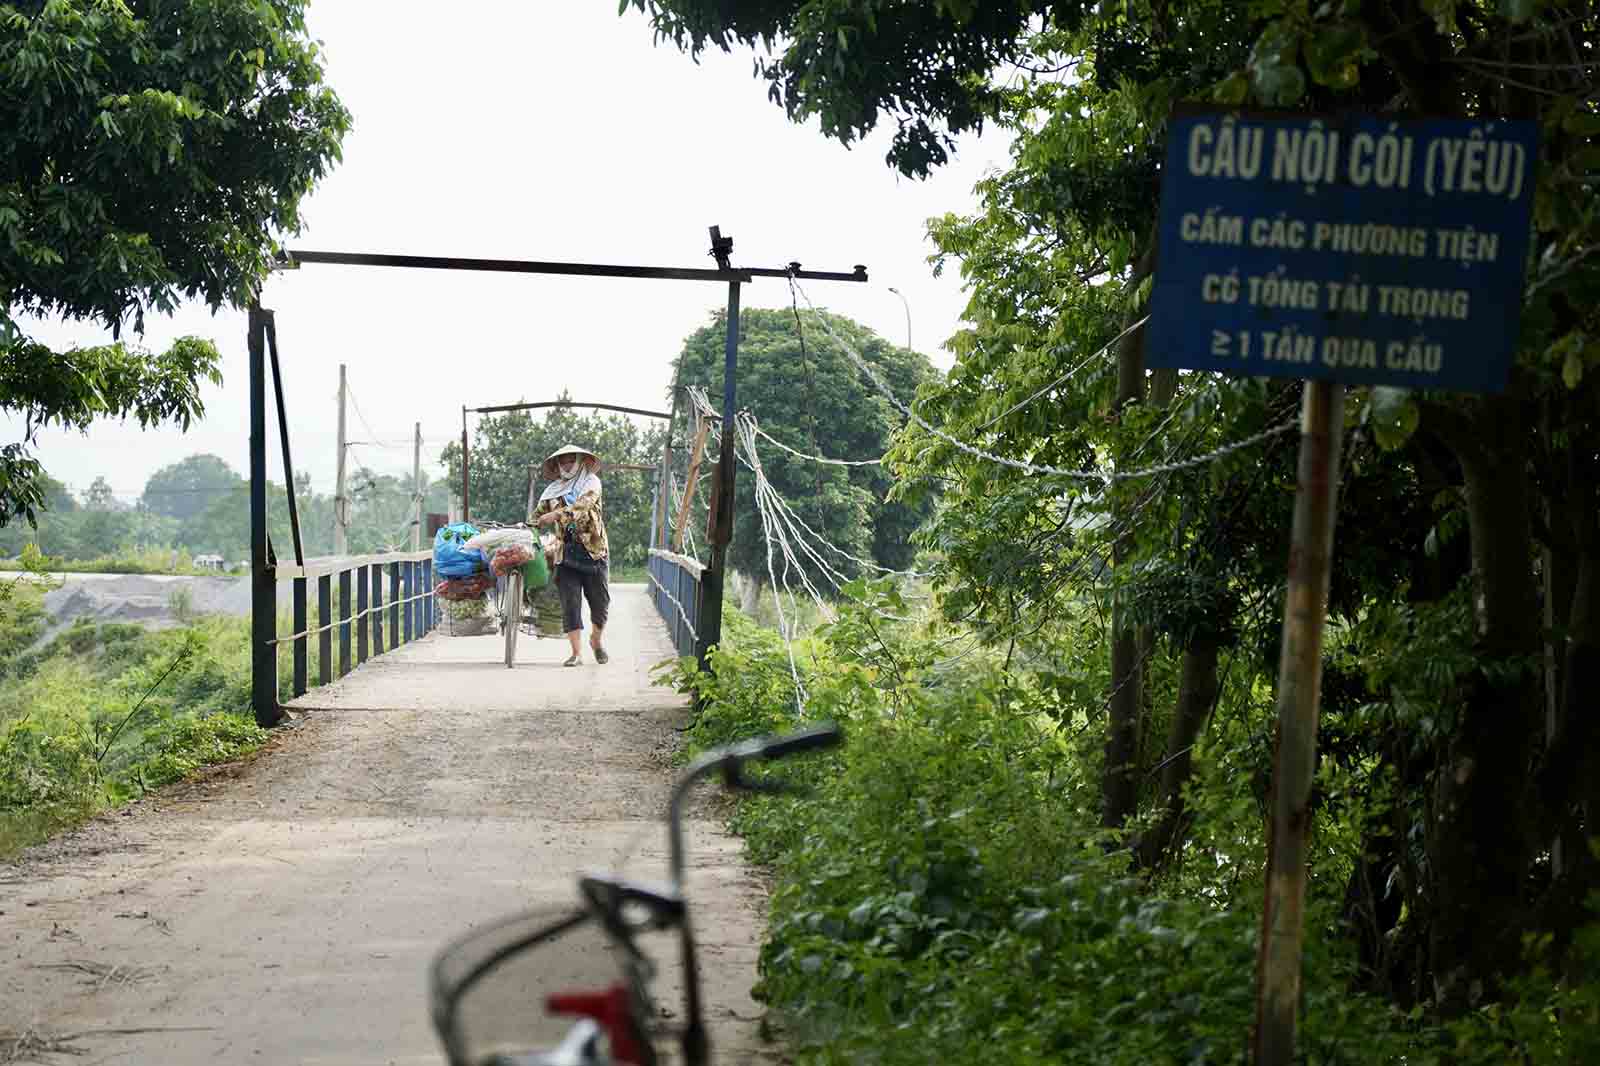 Cầu Nội Cói được người dân thông Nội bỏ tiền xây dựng năm 1998. Ảnh: Hữu Chánh